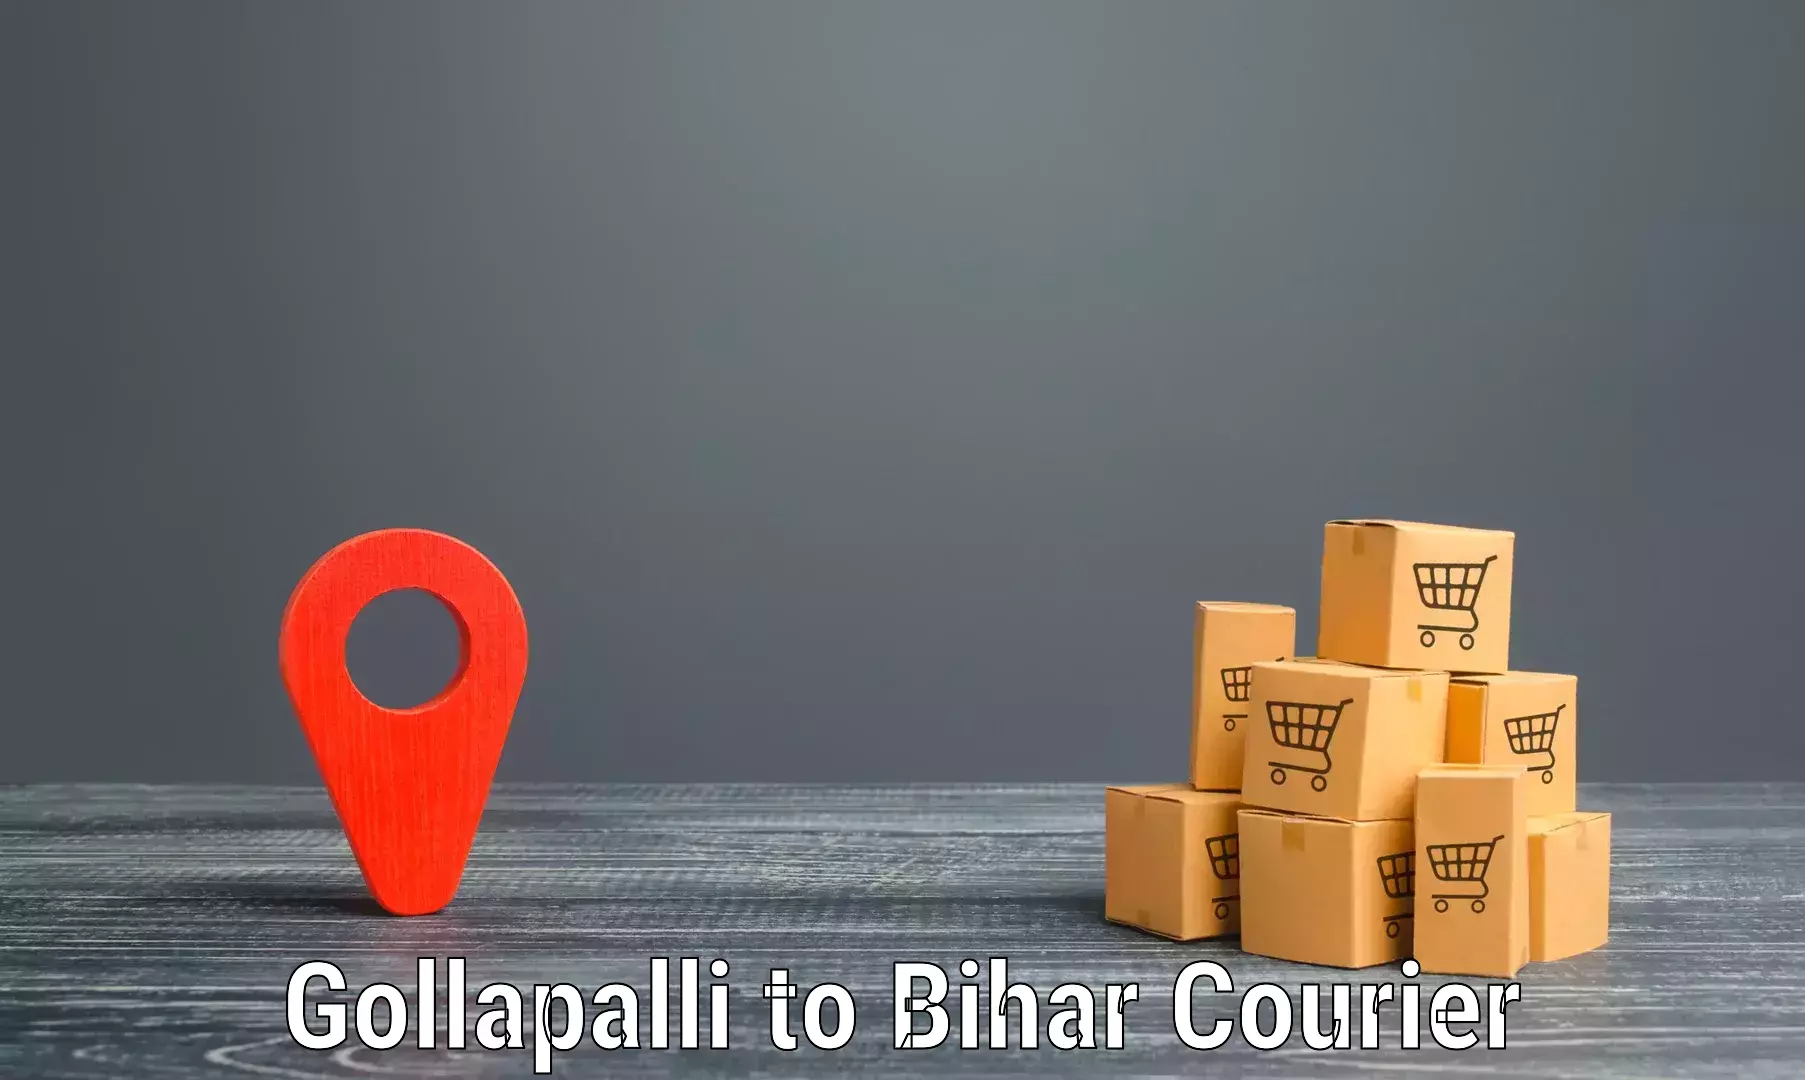 Trackable shipping service Gollapalli to Malmaliya